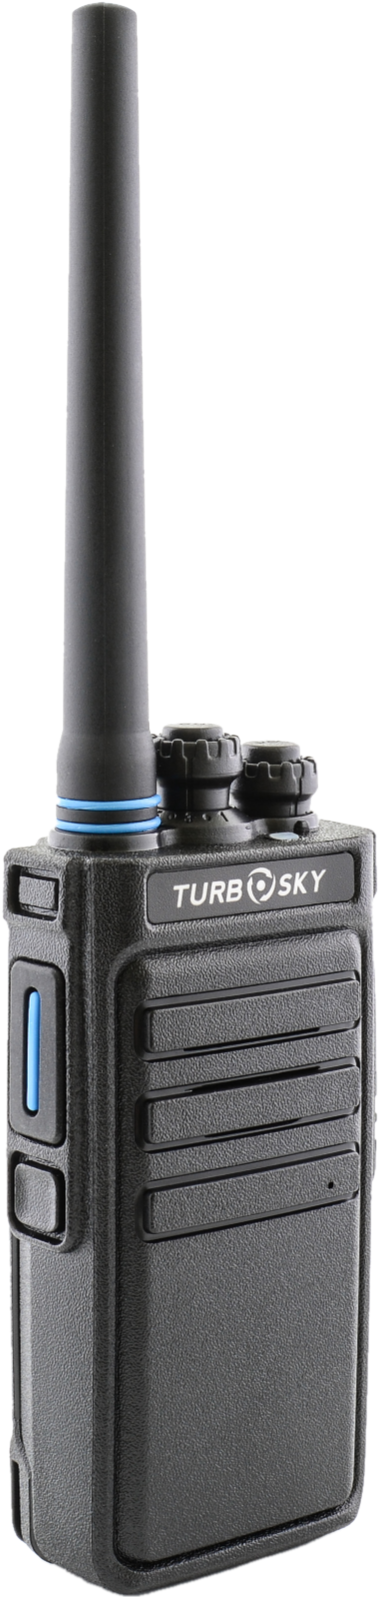 Портативная радиостанция TurboSky T6